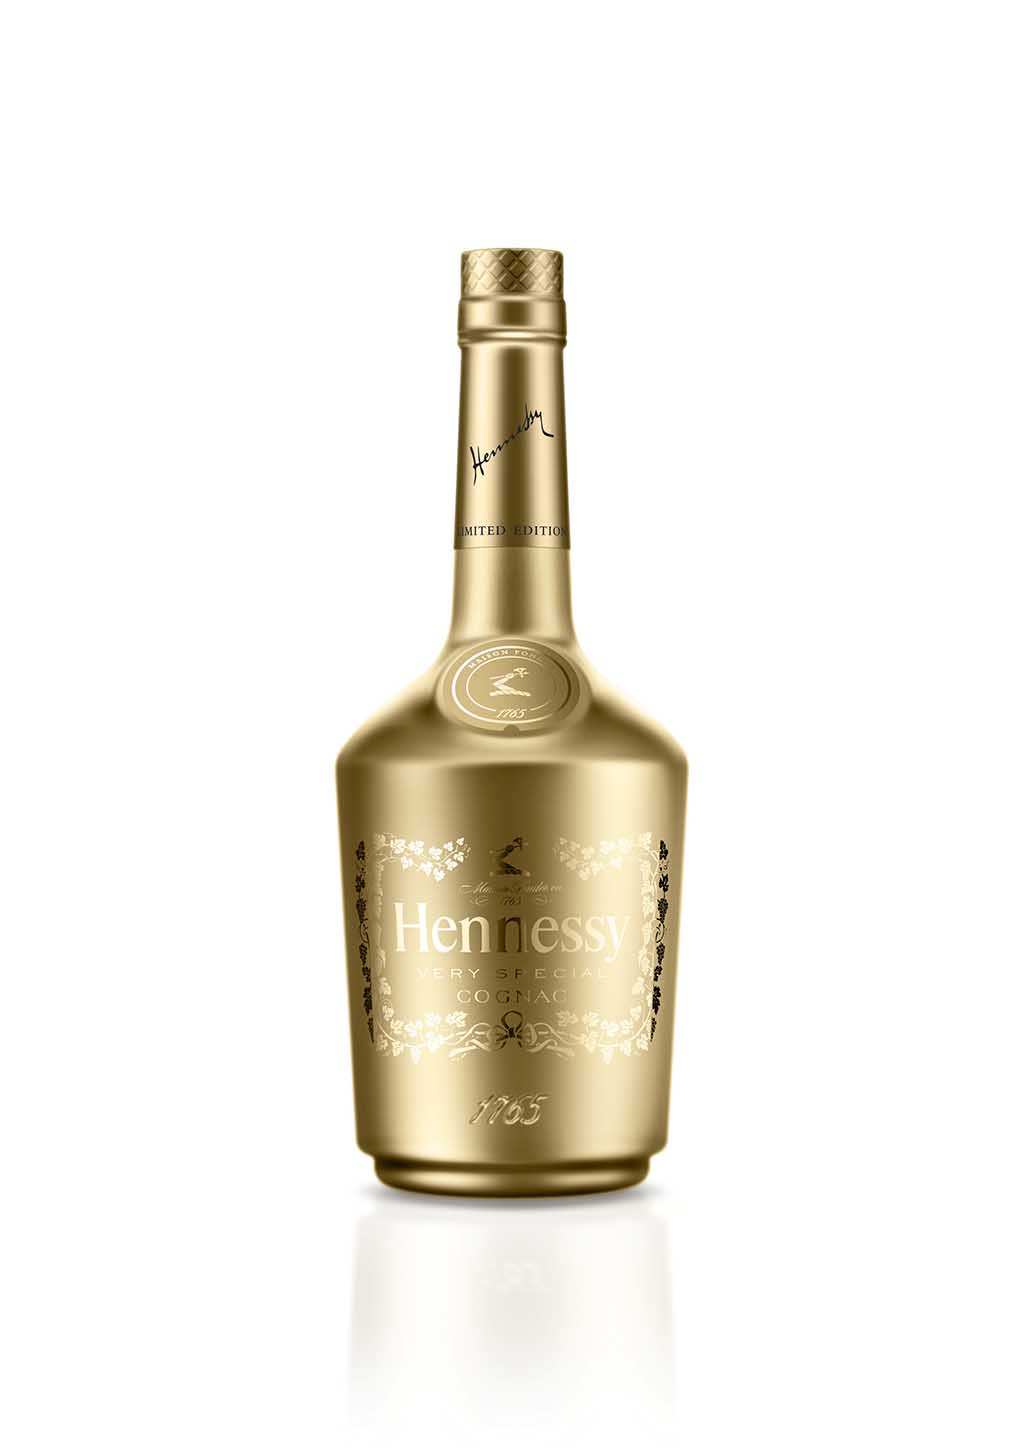 Regalos de Navidad: botellas de champaña y whisky de hasta $1,500 1